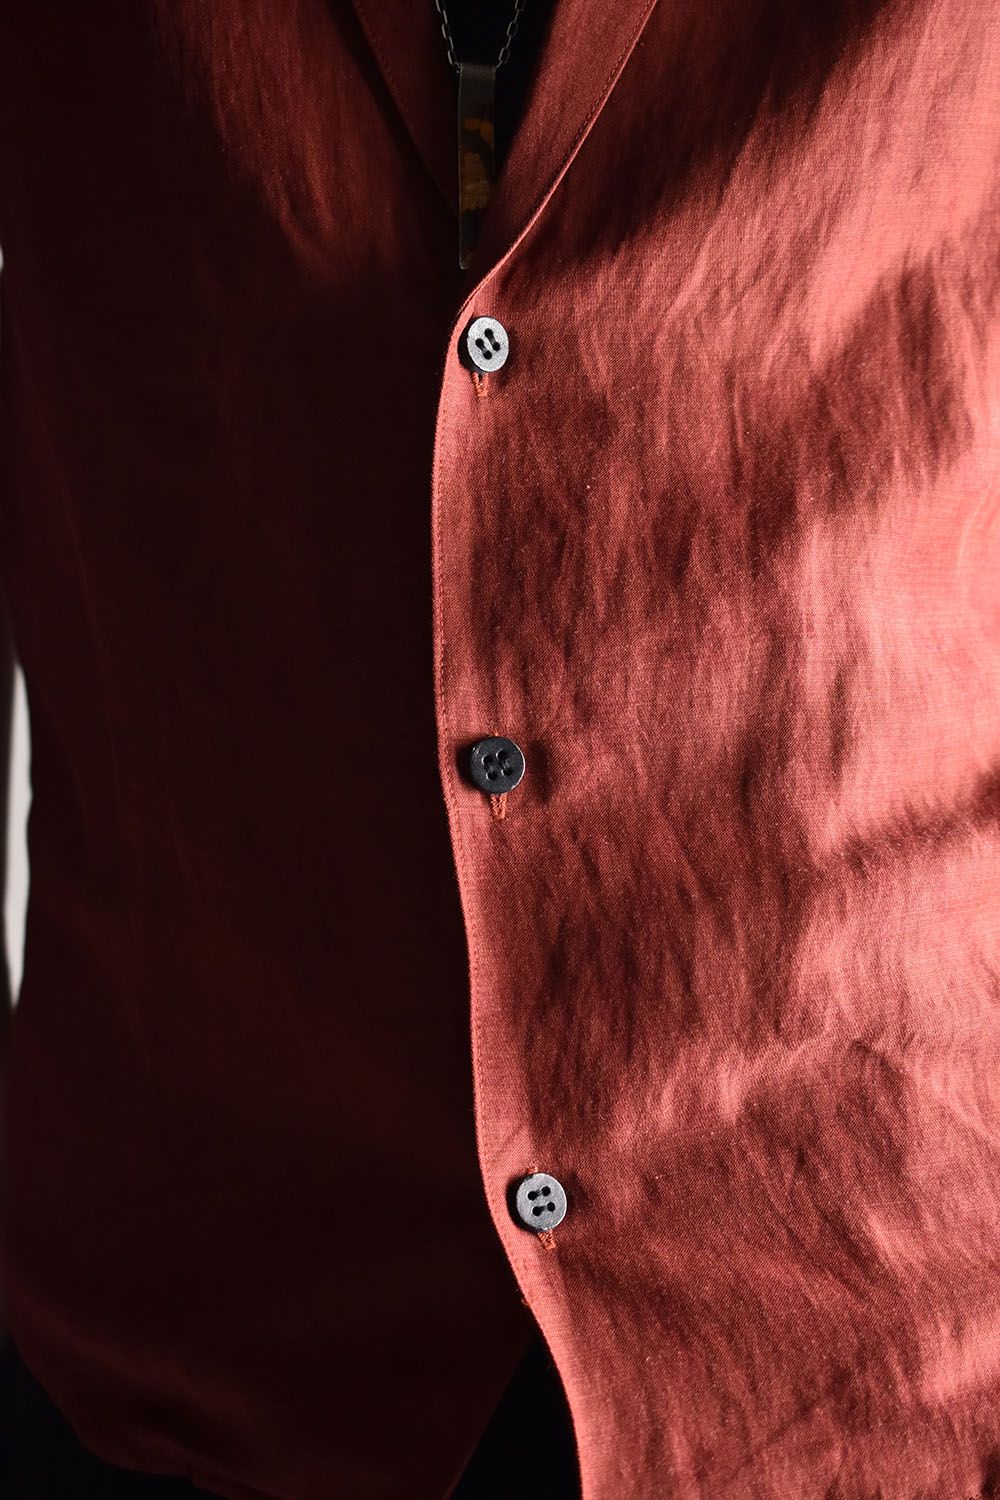 Linen×Rayon Tailor Shirts"Brick"/リネン×レーヨン塩縮染半袖テーラーシャツ"ブリック"